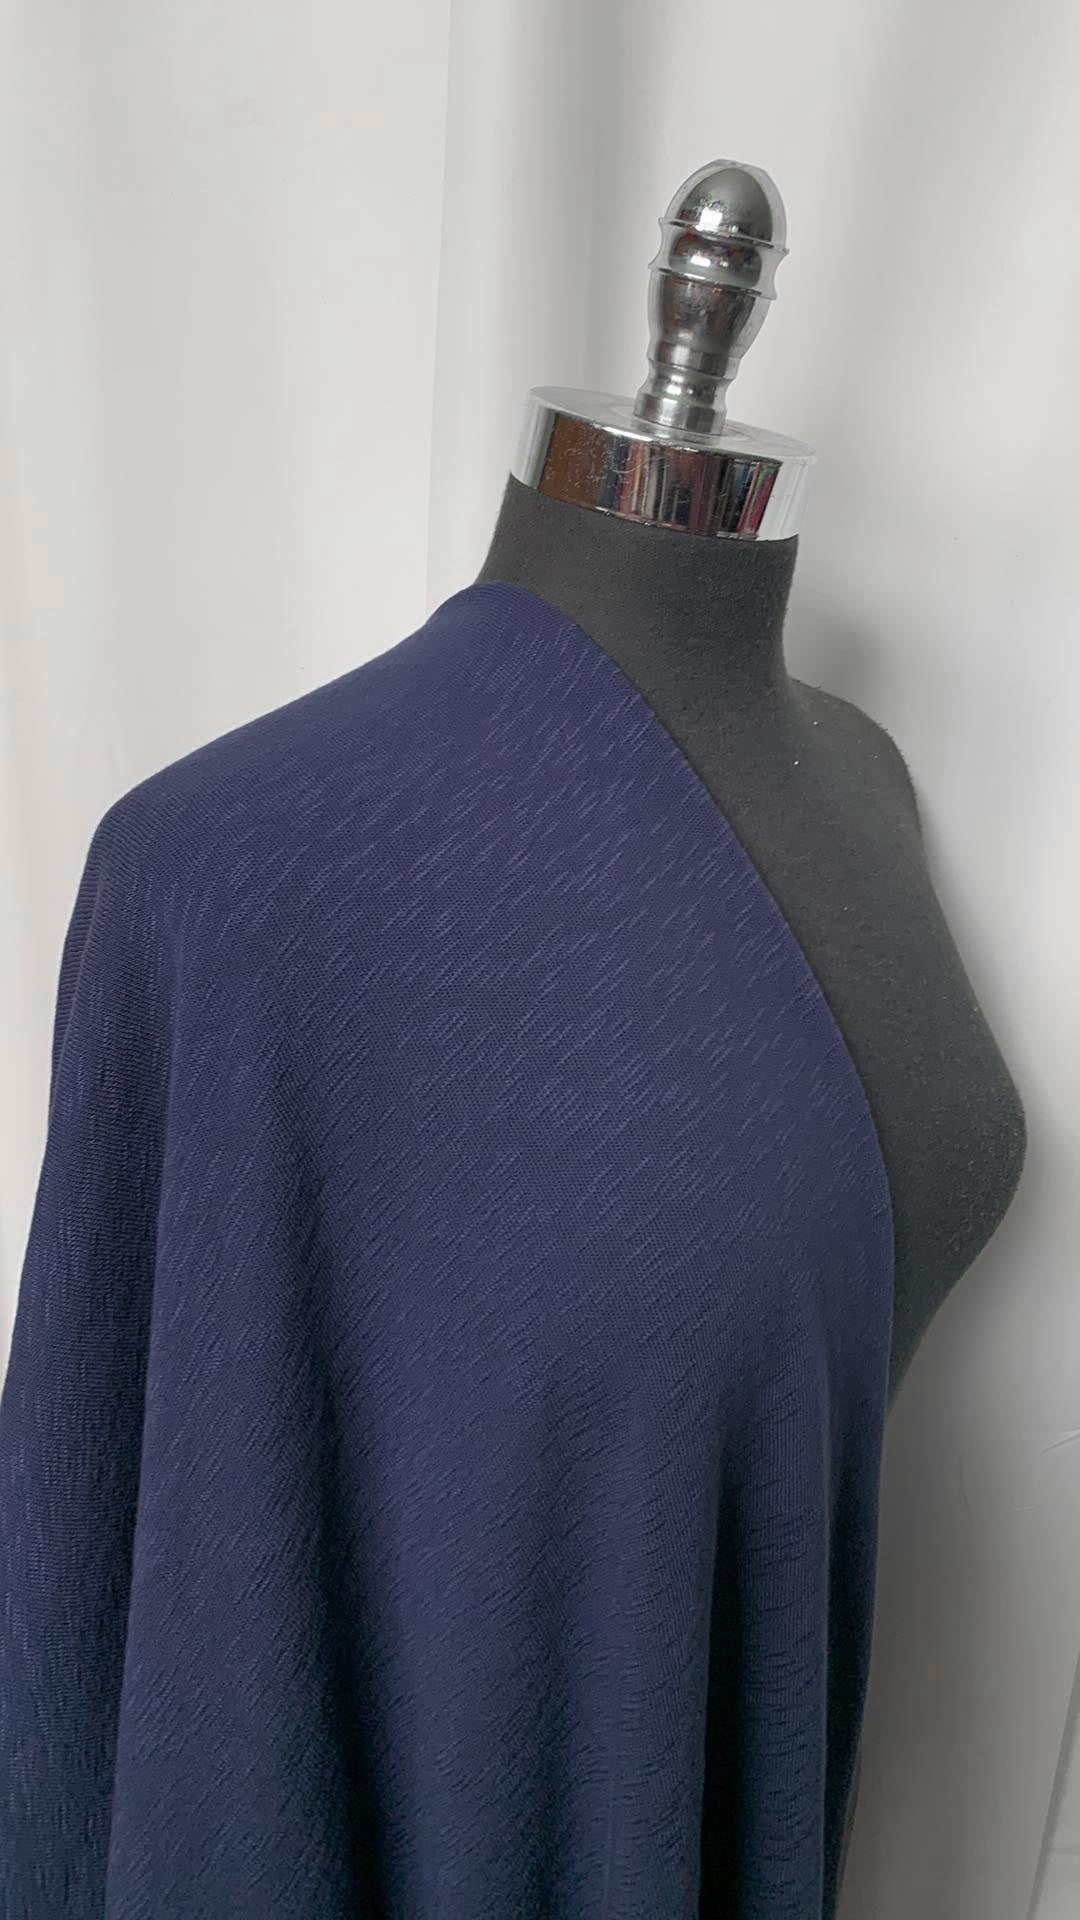 Soft Navy - 100% Cotton Heavy Slub Sweater Knit - 2 Yard Cut